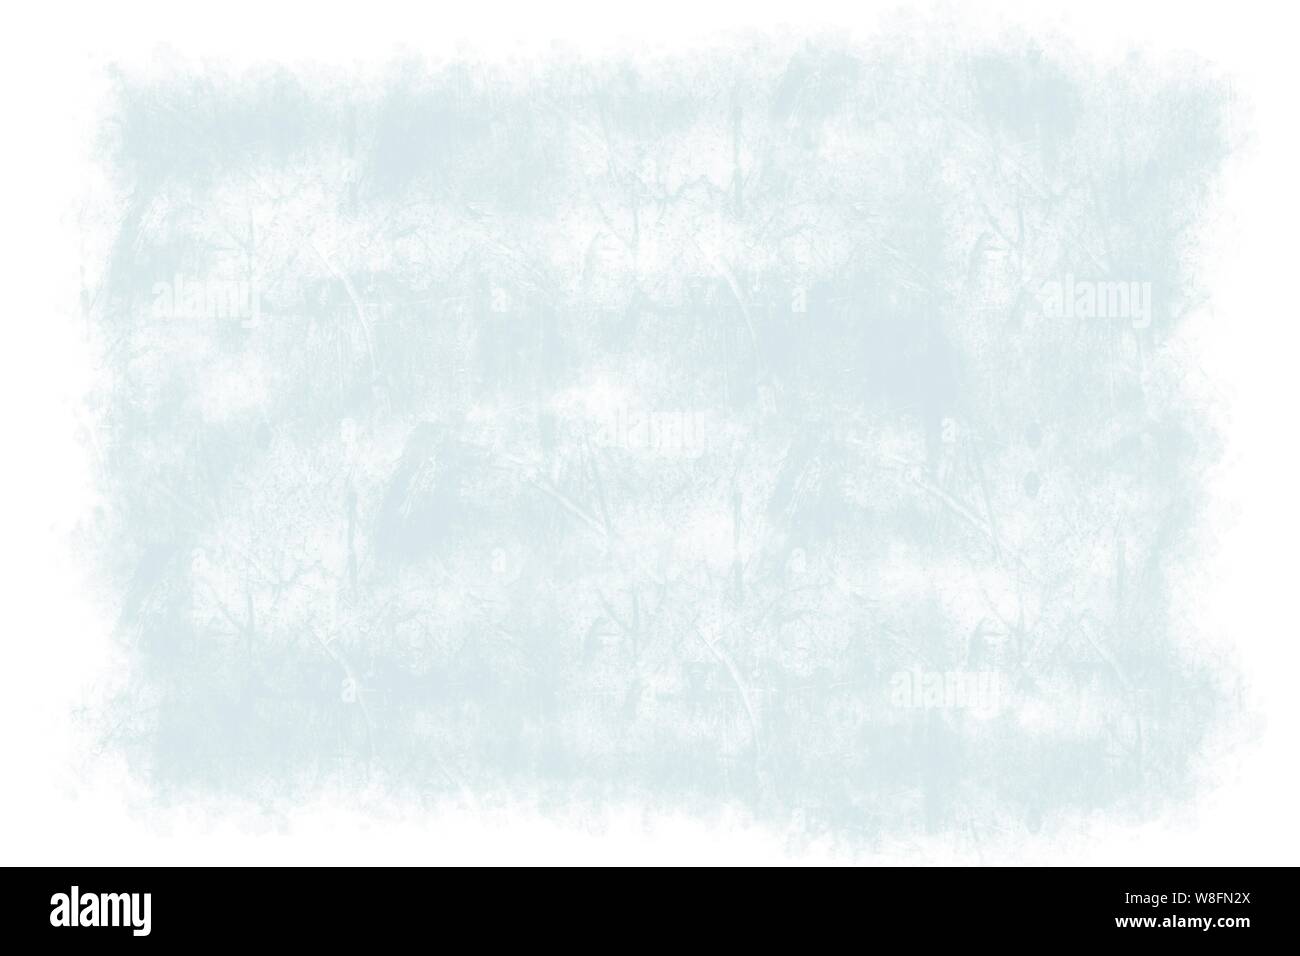 Blu ghiaccio disegnati a mano ruvida parete di cemento Sfondo piastrelle pattern con curva linee irregolari e bordo bianco Foto Stock